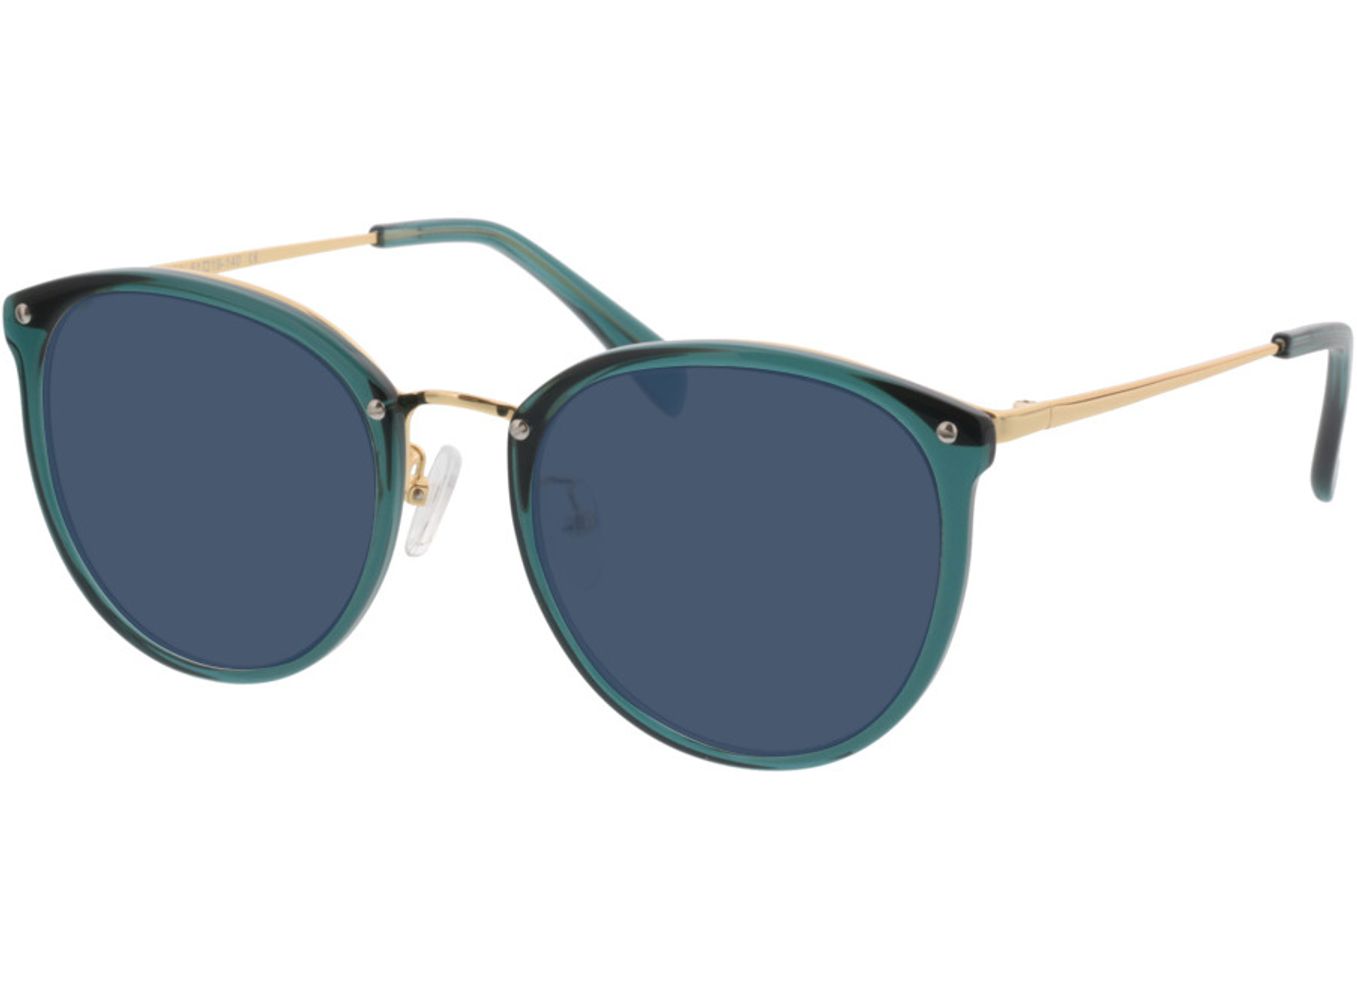 Charlotte - grün/gold Sonnenbrille ohne Sehstärke, Vollrand, panto von Brille24 Collection